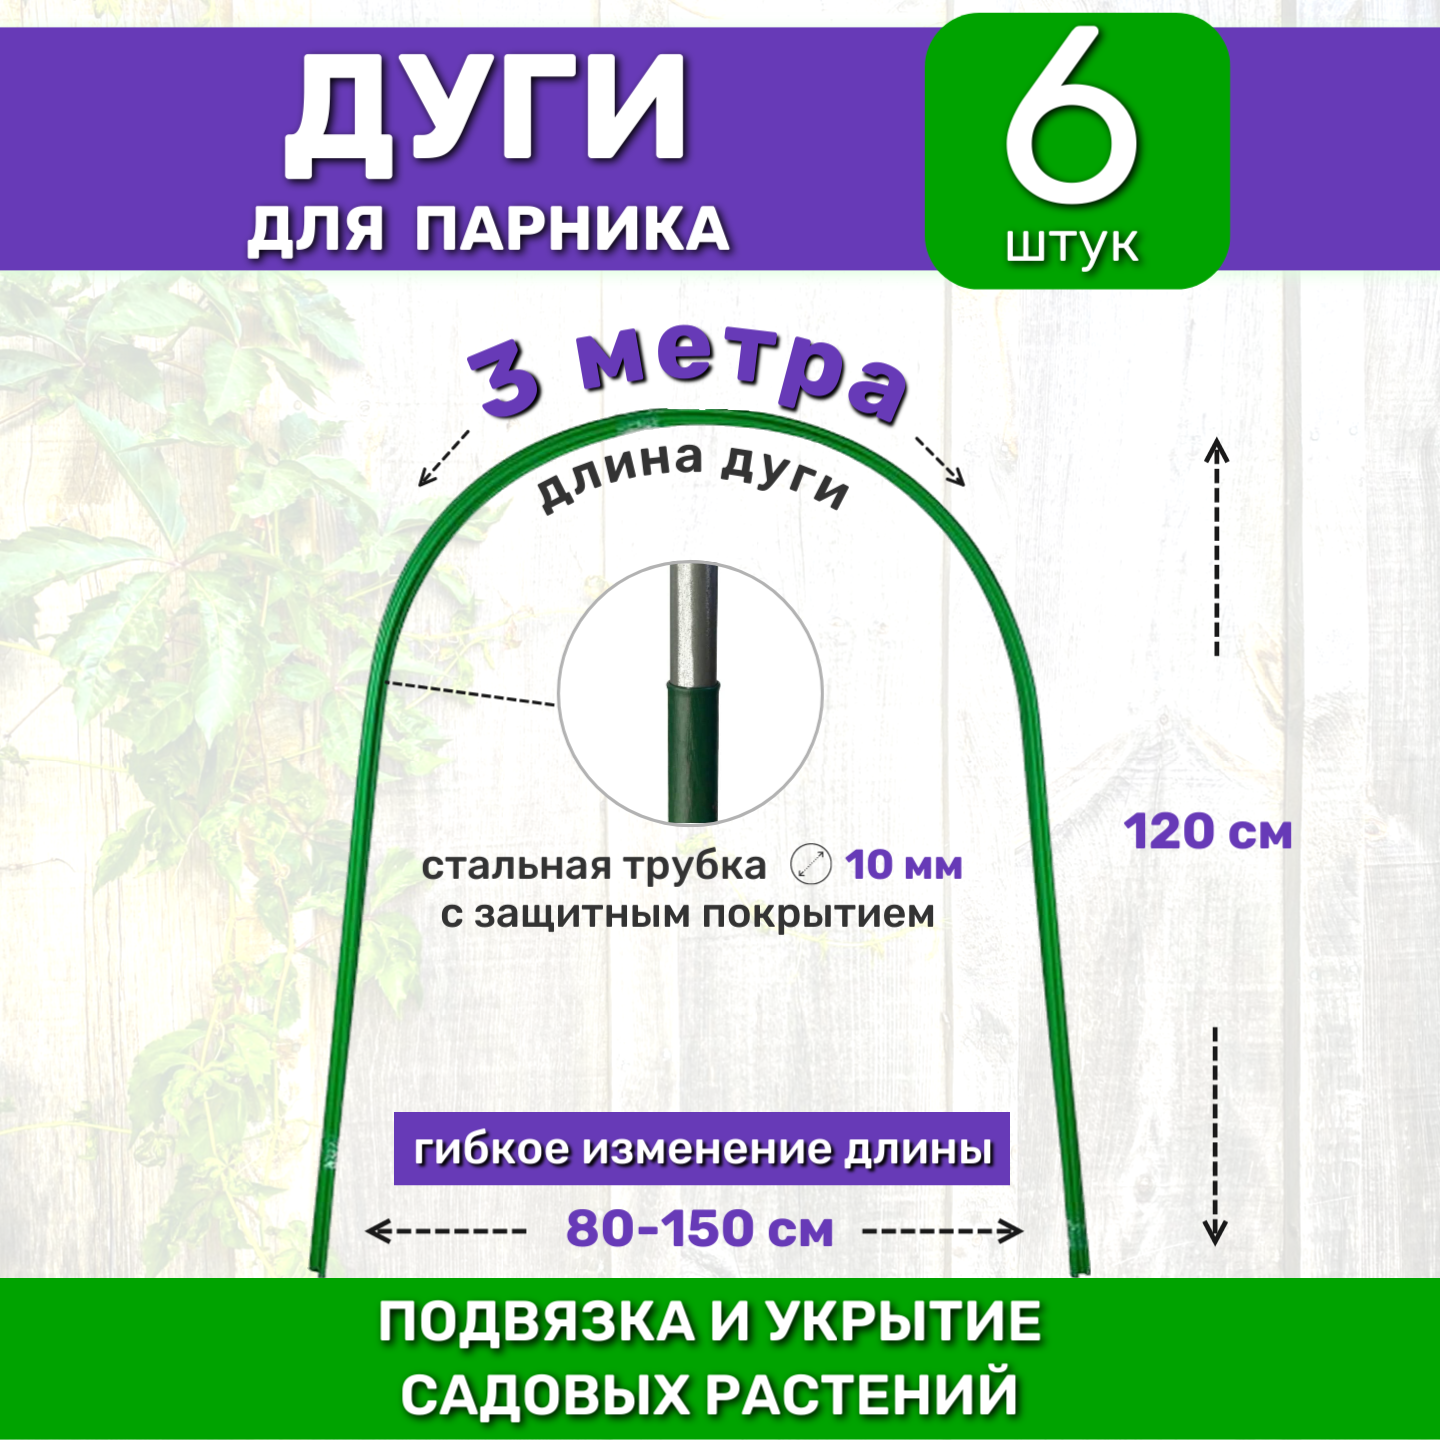 Садовые дуги для парника грядок и растений (6 штук) длина 2 м диаметр 10 мм металлические в ПВХ